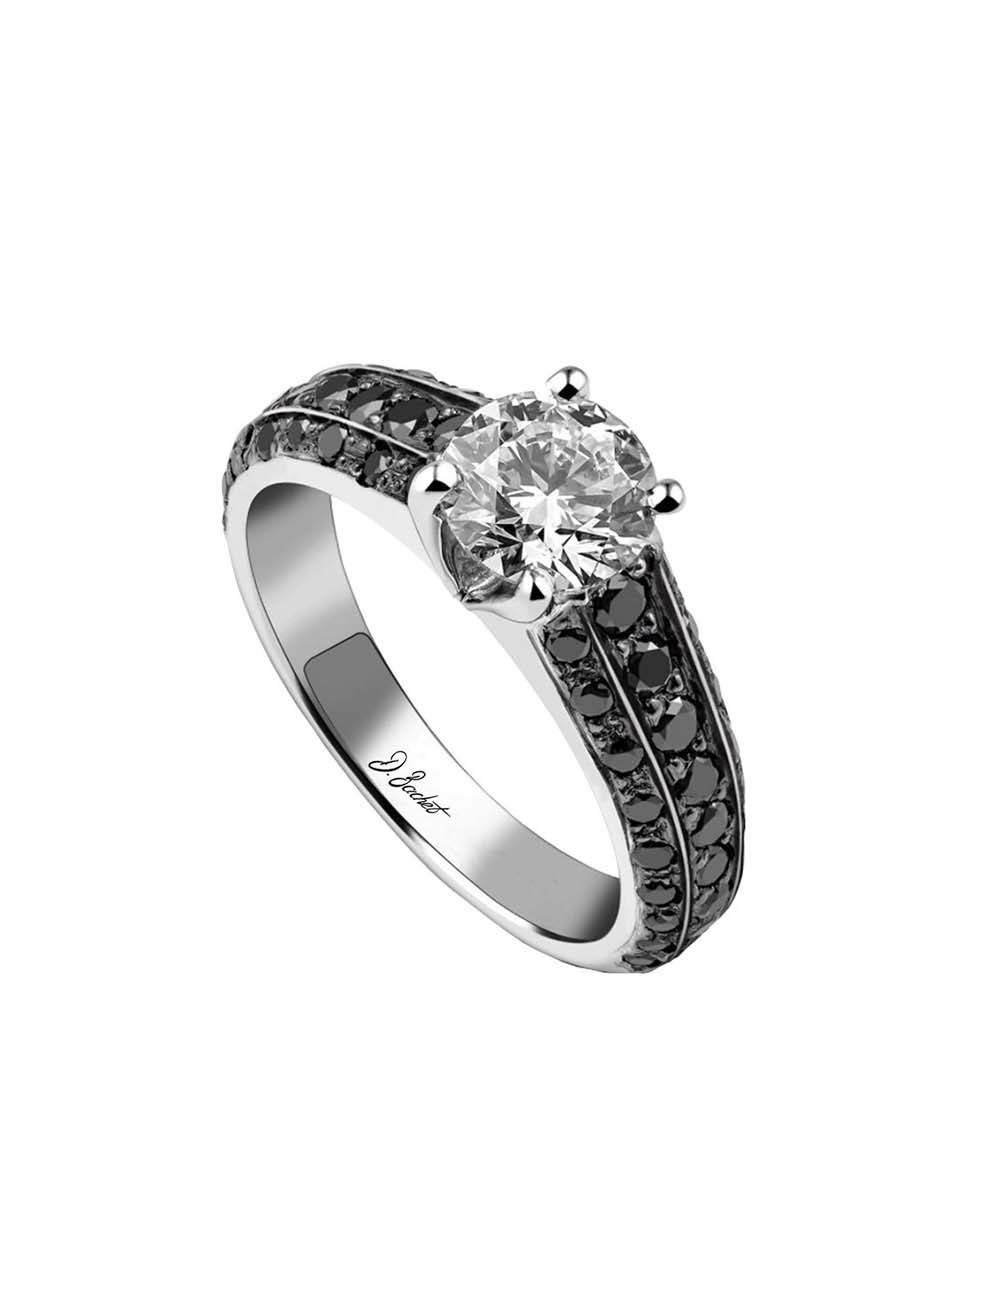 Bague fiançailles platine au design moderne, sertie de diamants noirs et d'un diamant central blanc 0.80ct.